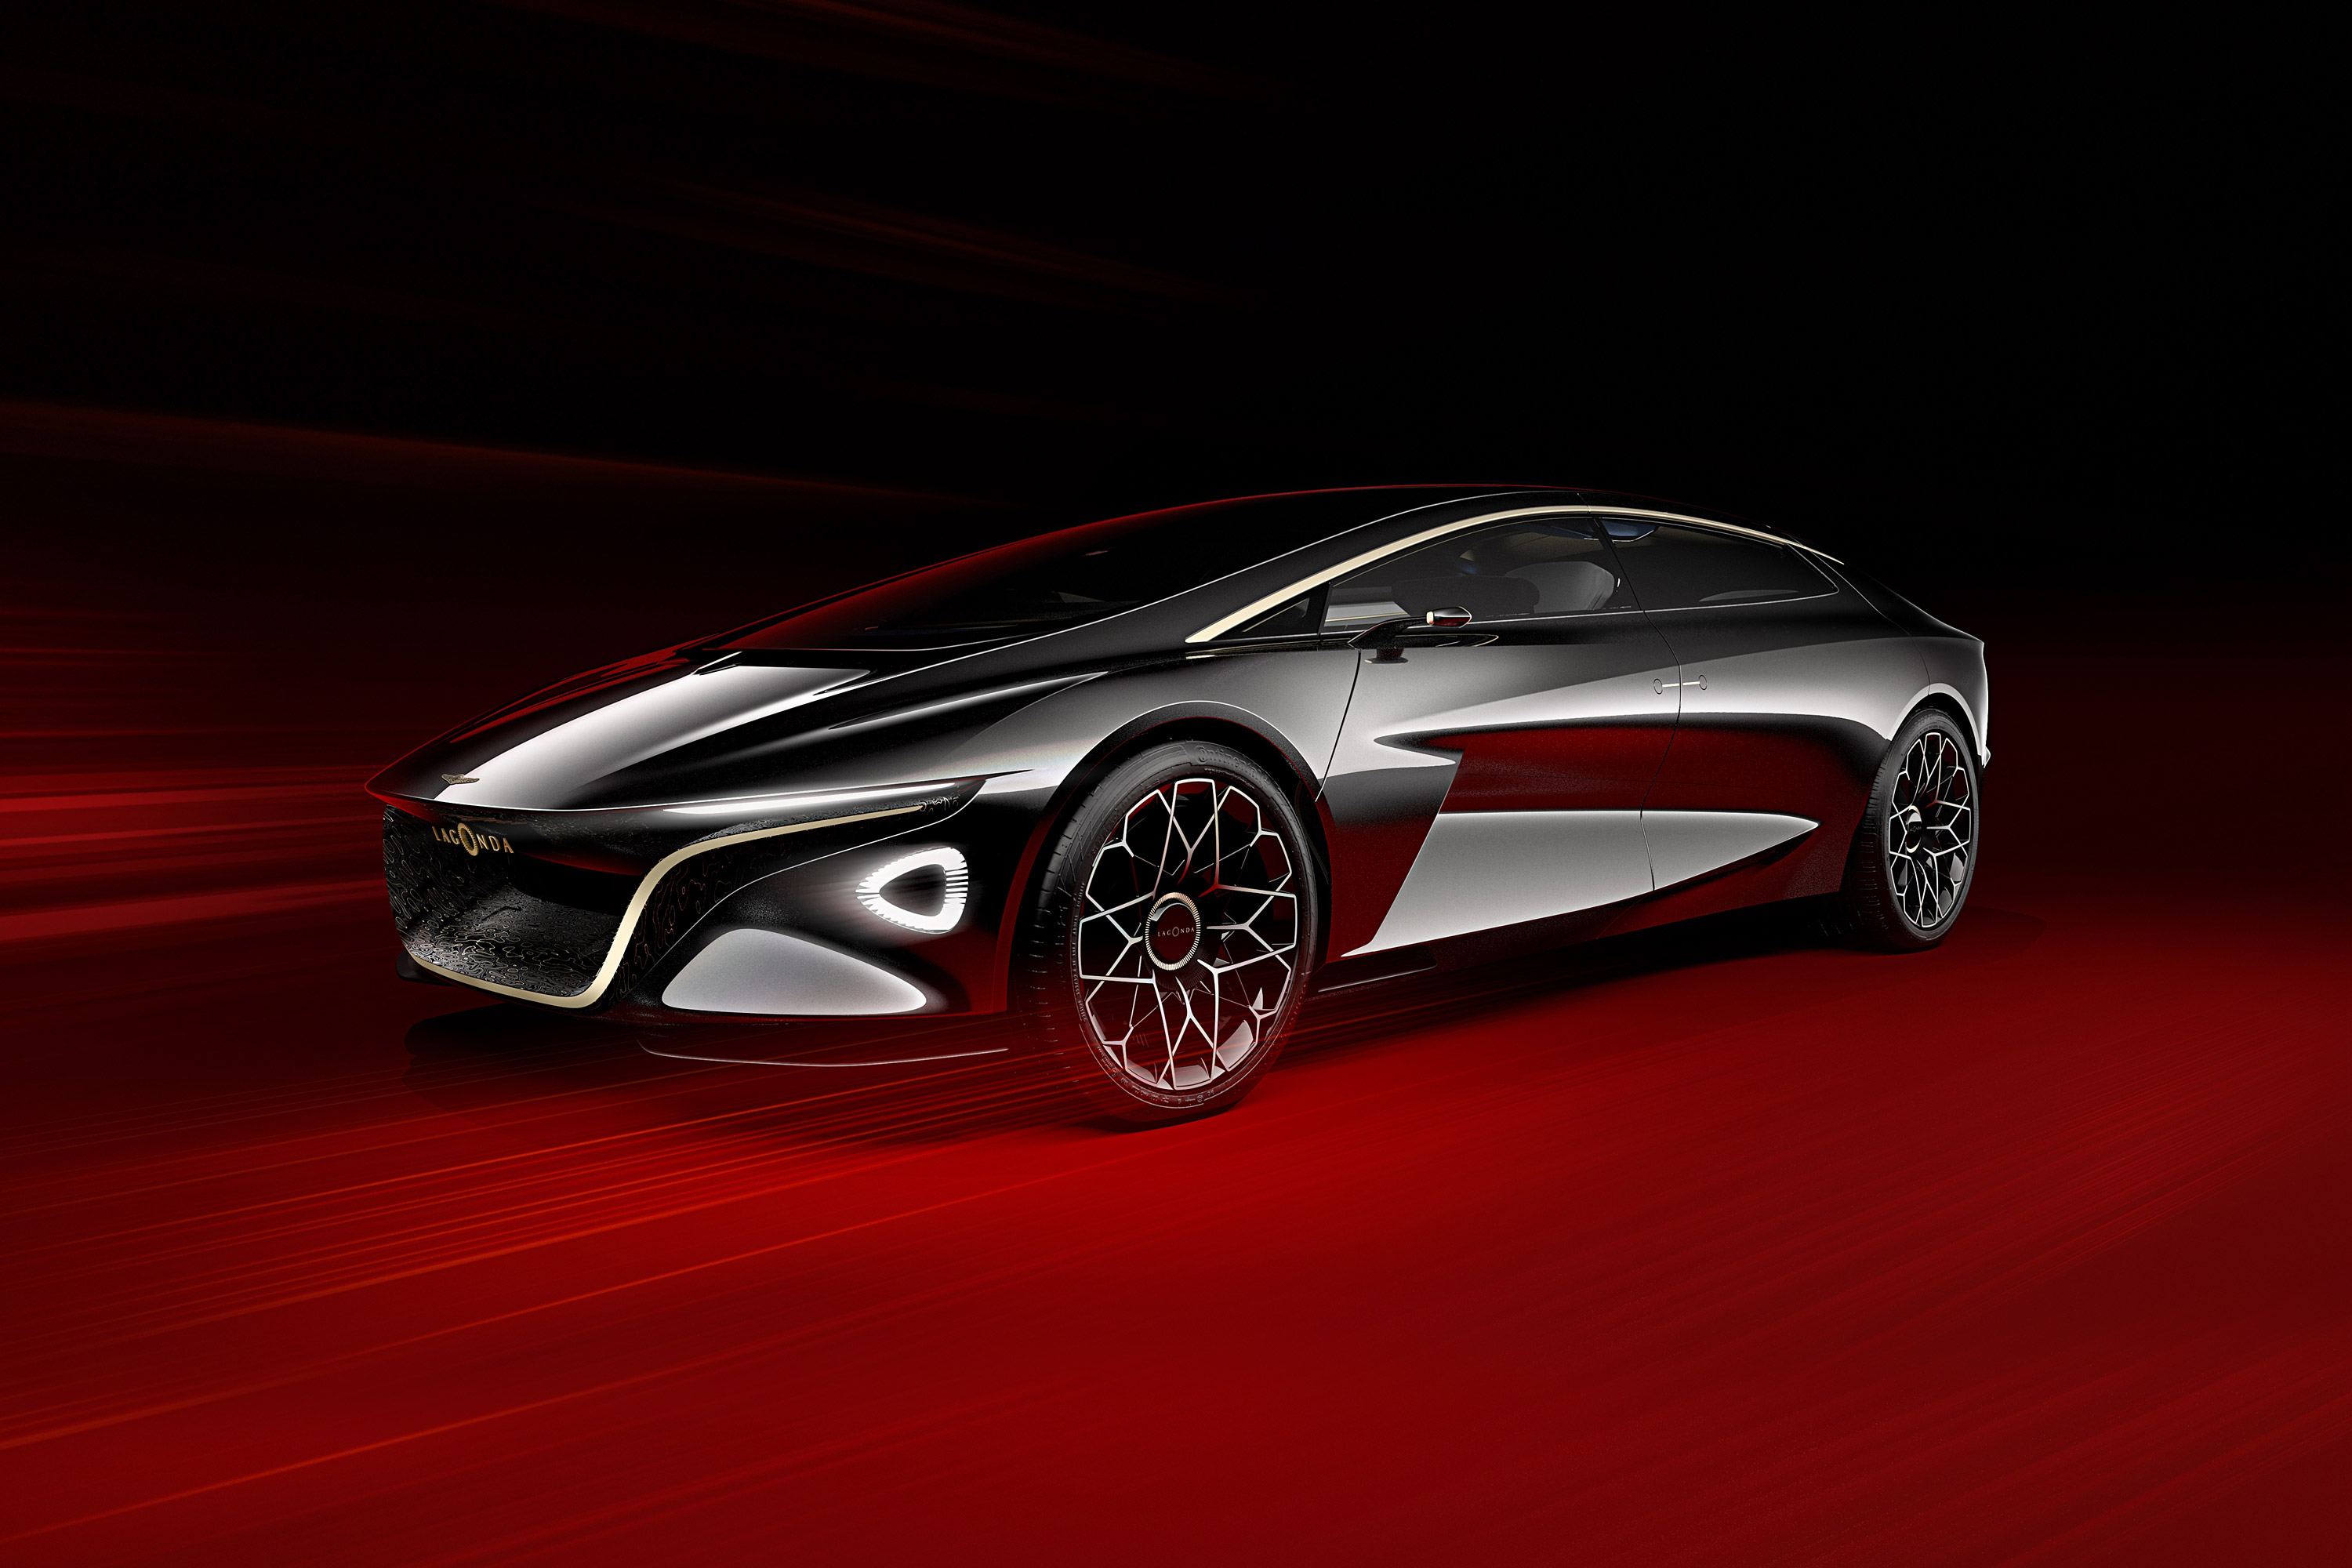 Télécharger des fonds d'écran Concept Aston Martin Lagonda Vision HD